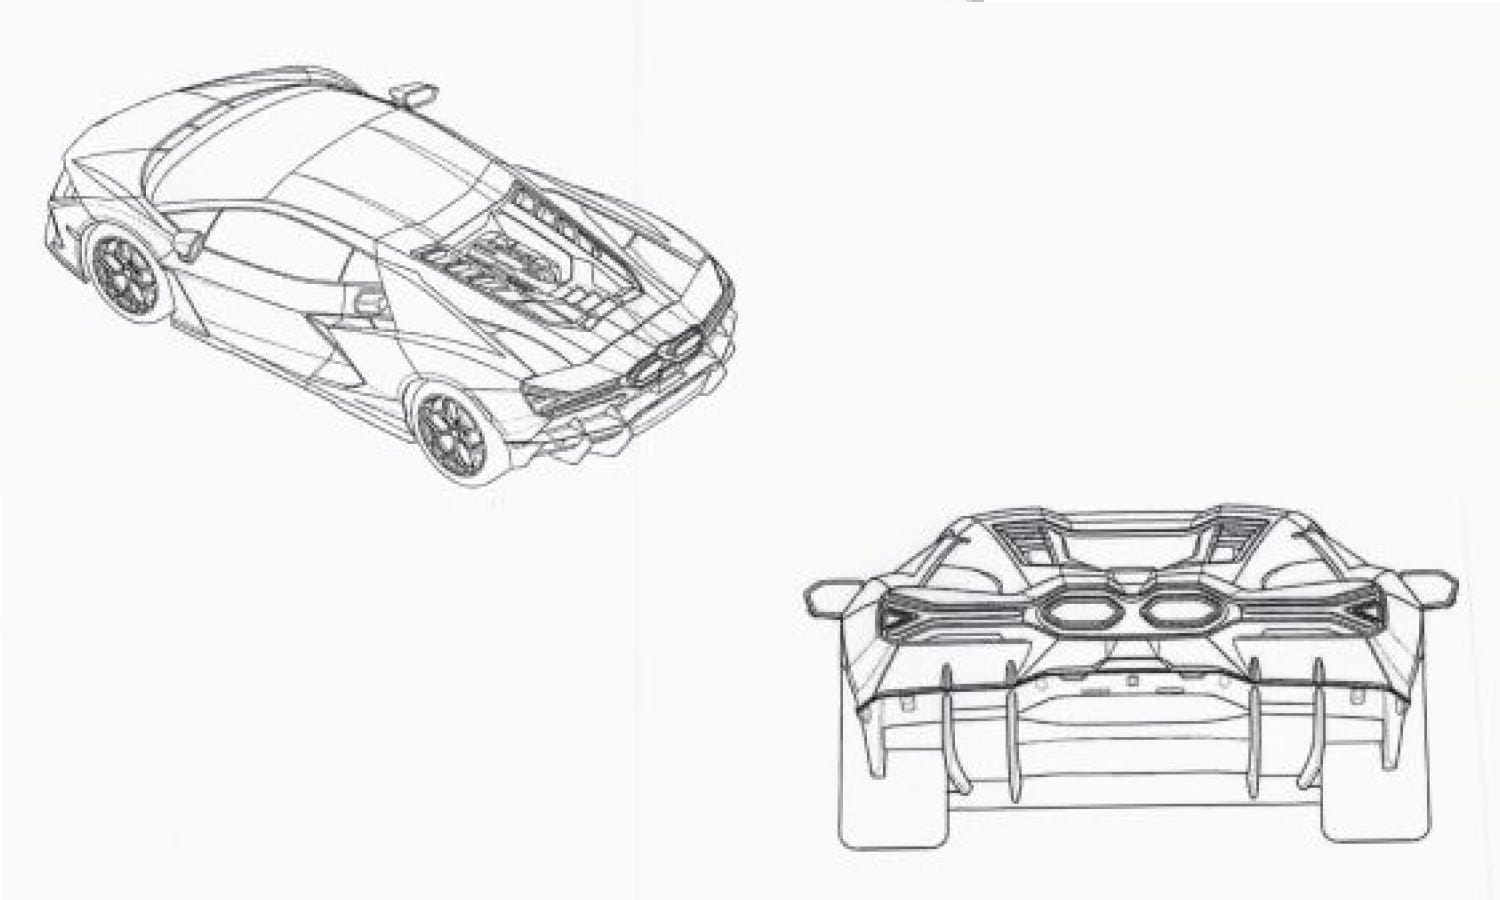 Lamborghini Aventador replacement patent images